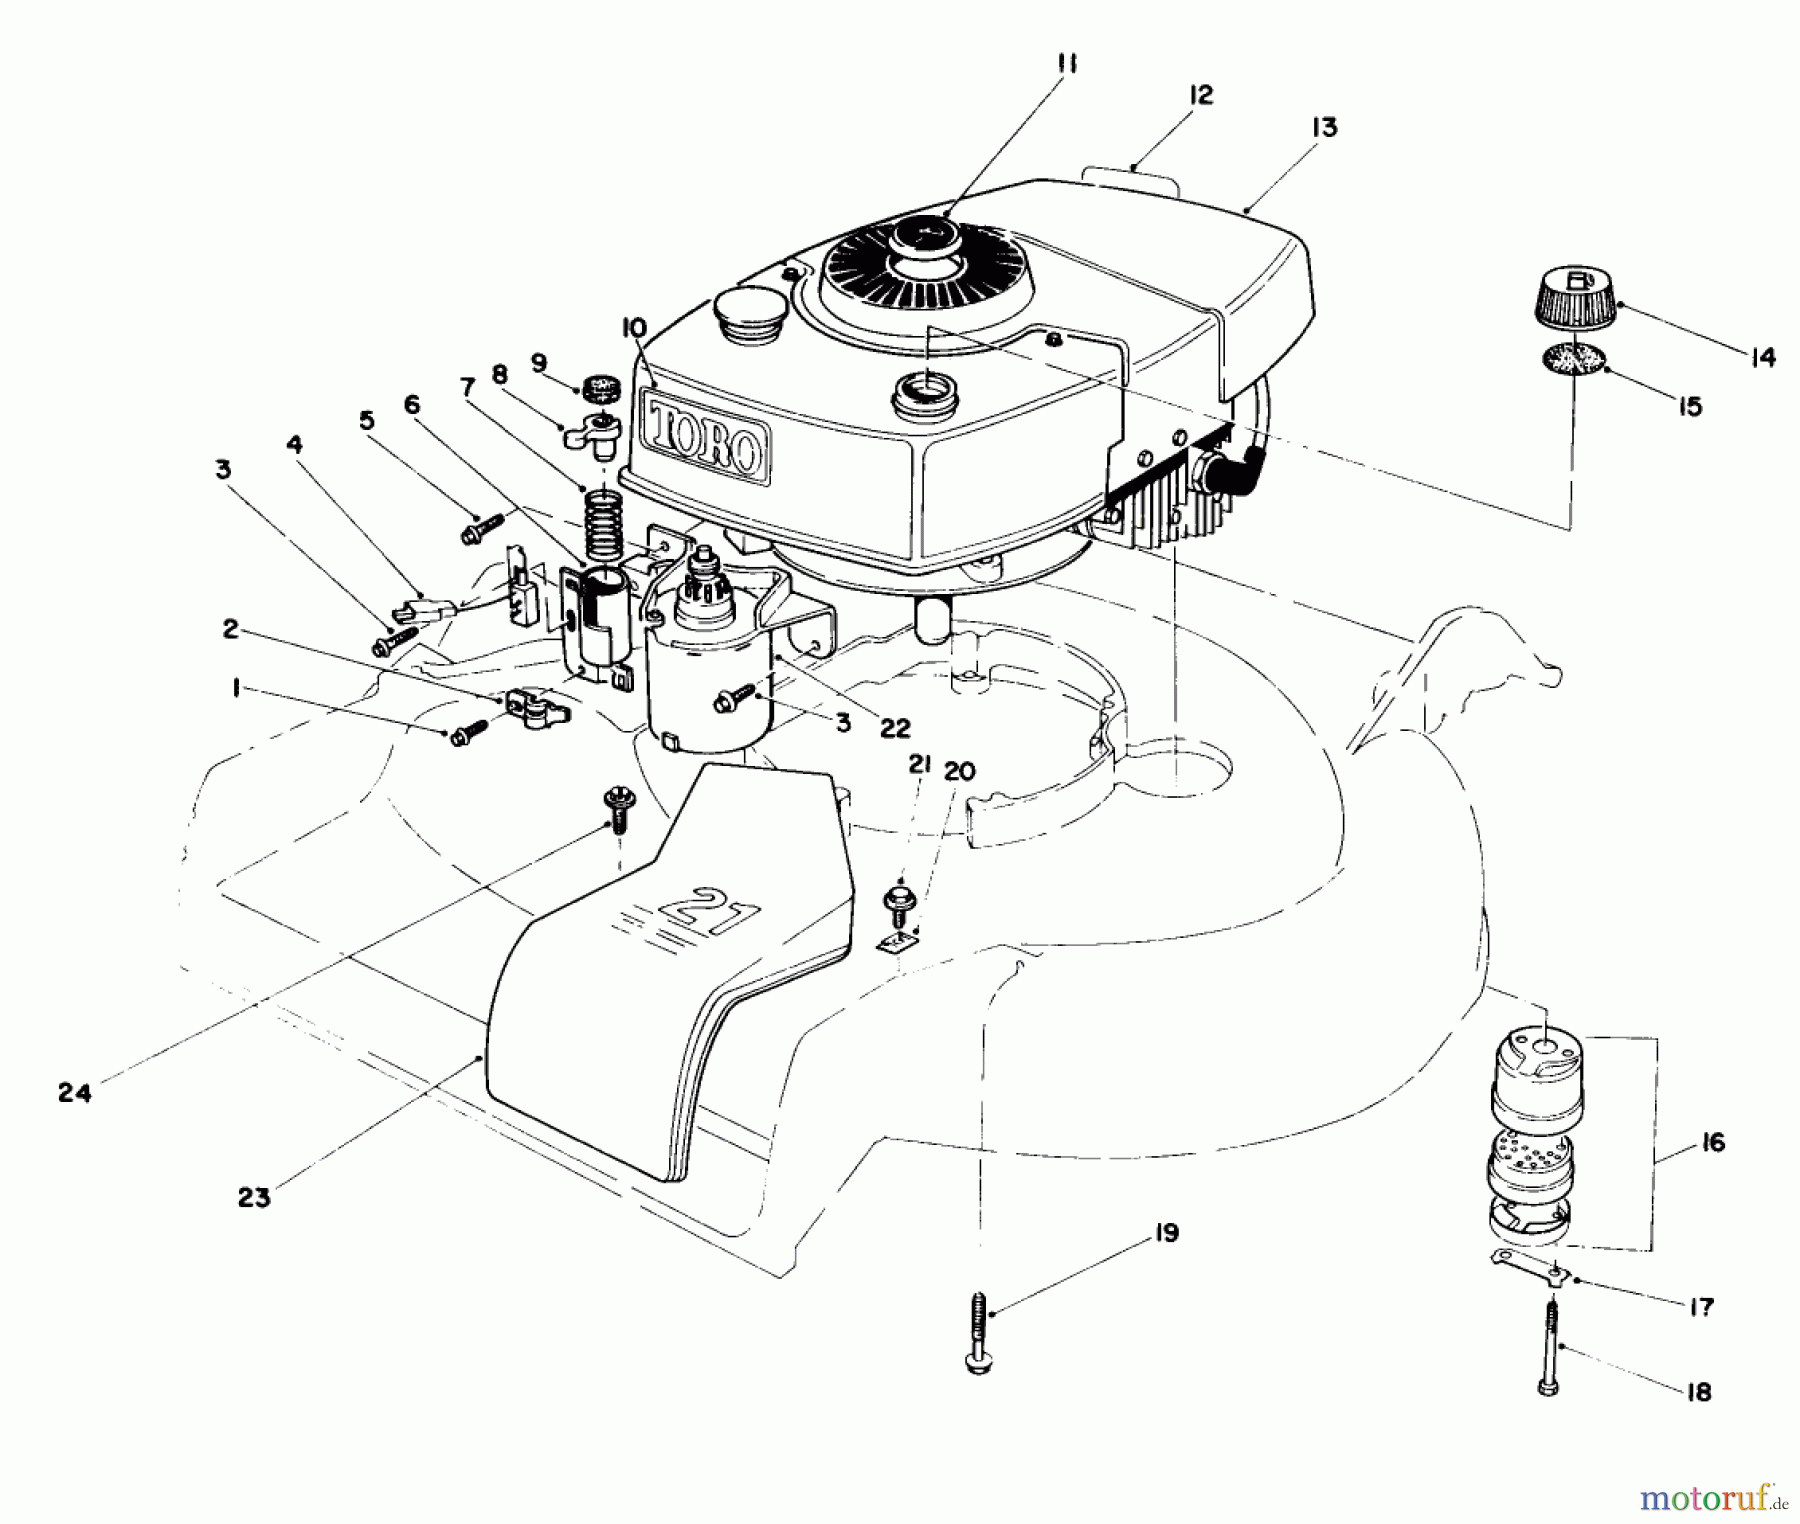  Toro Neu Mowers, Walk-Behind Seite 1 16770 - Toro Lawnmower, 1984 (4000001-4999999) ENGINE ASSEMBLY